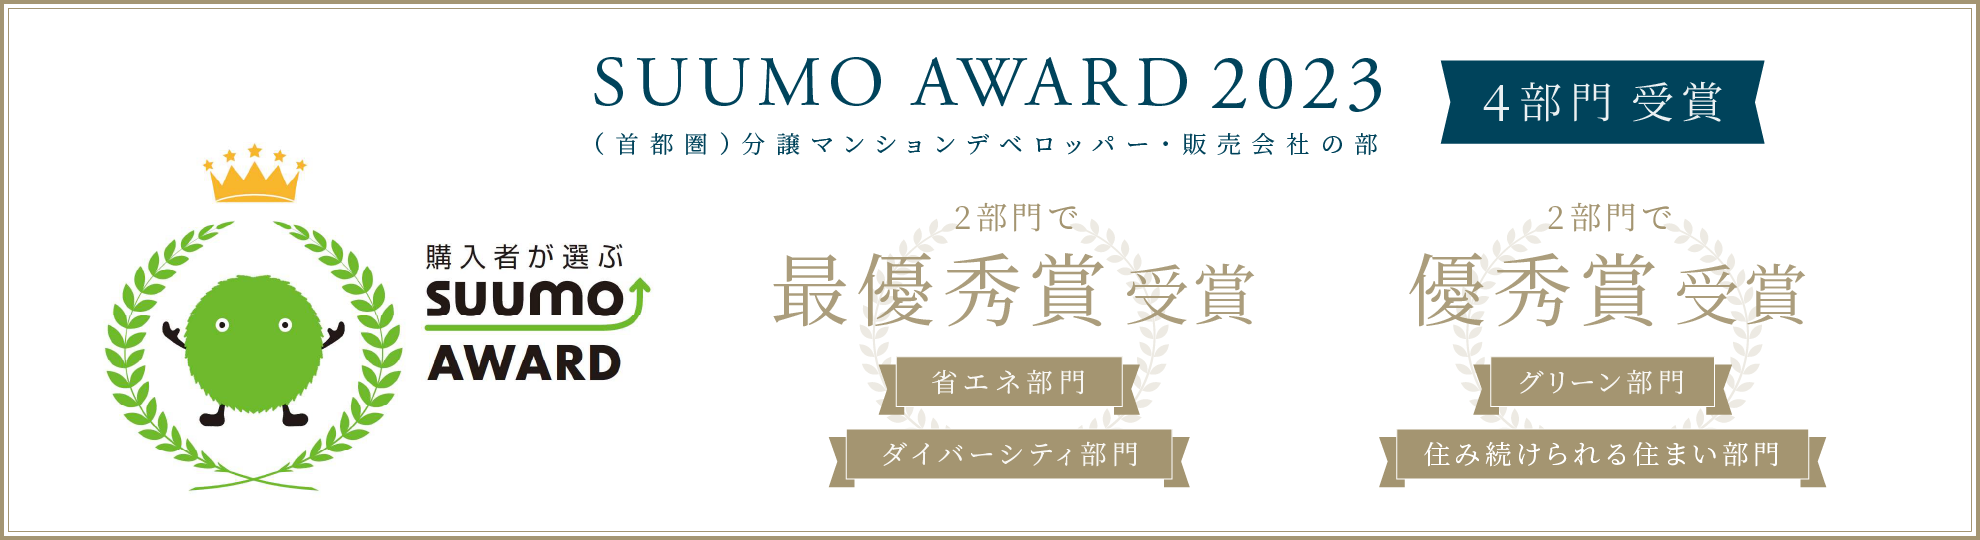 SUUMO AWARD 2023